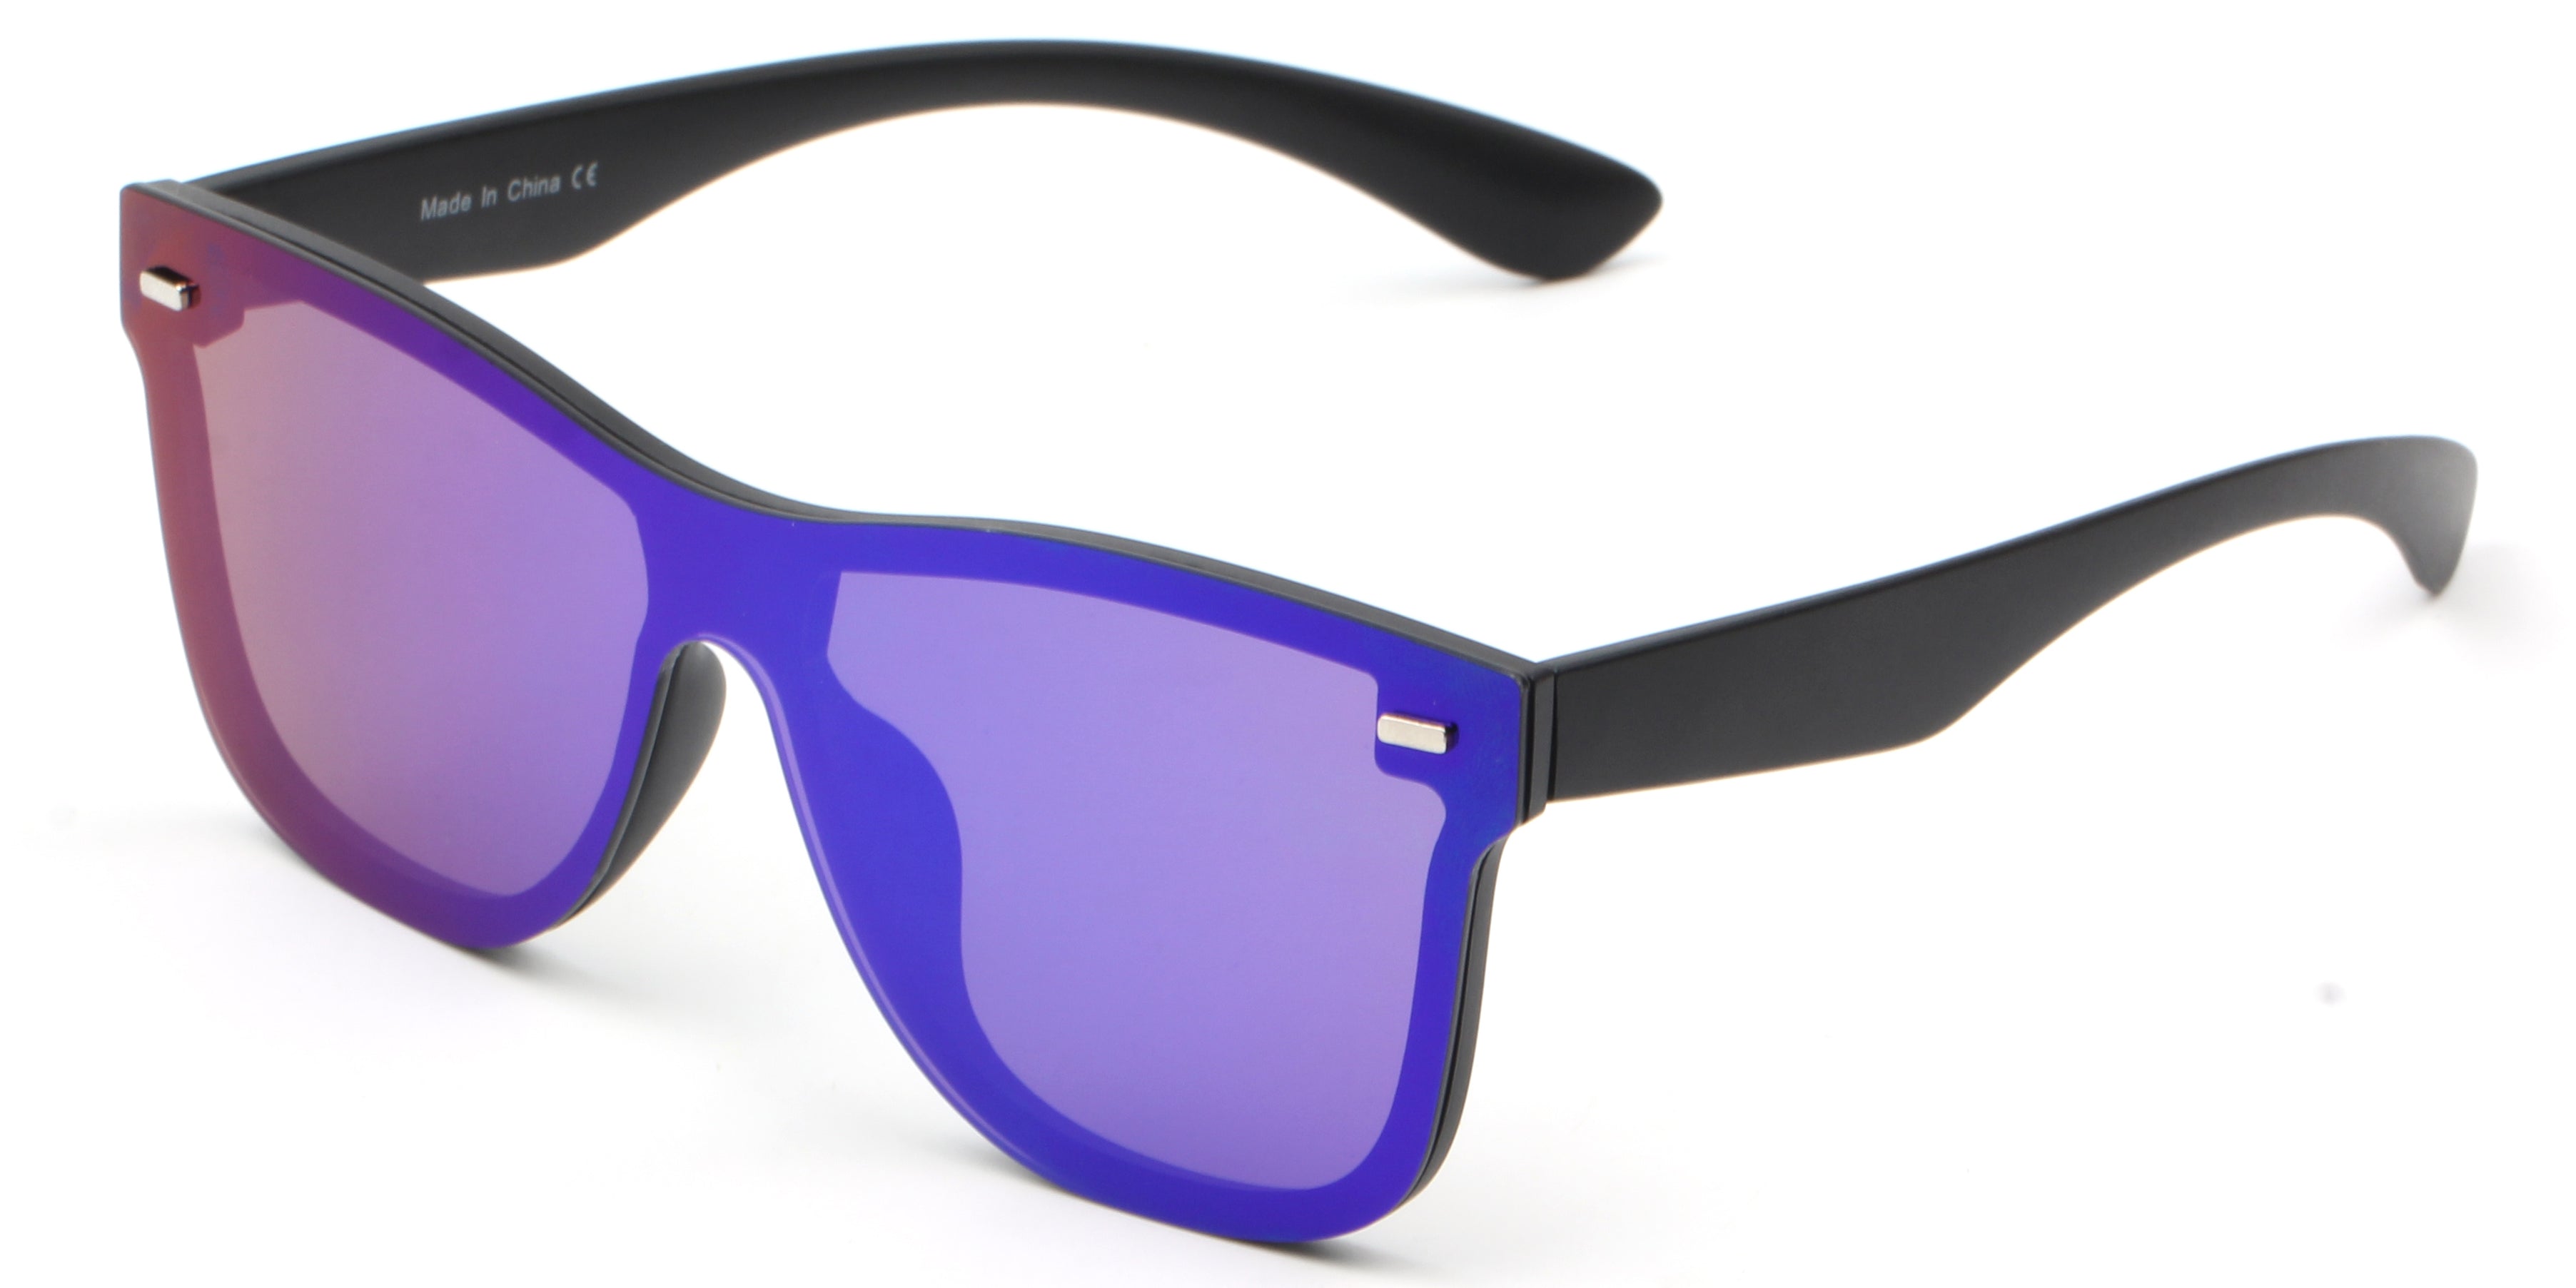 S2010 - Retro Square Flat Top Mirrored Fashion SUNGLASSES PurpleBlue